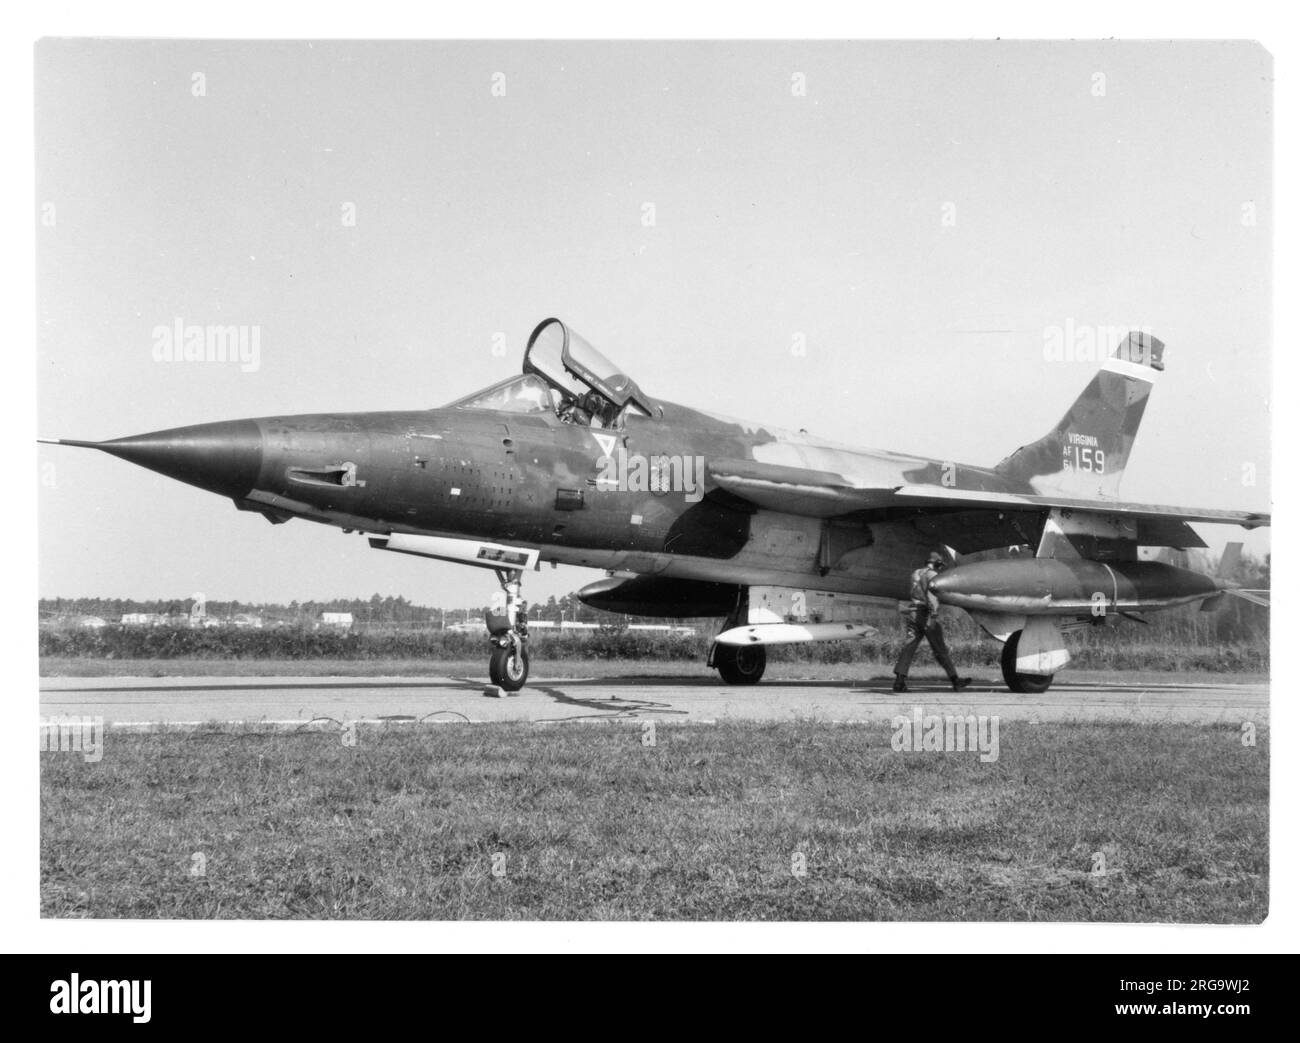 Virginia Air National Guard - Republic F-105D Thunderchief 61-0159 (msn D354) del Escuadrón de Cazas Táctico 149th visto con un lanzacohetes Zuni de práctica de 4 cartuchos en el pilón de la puerta de la bomba. En febrero de 1970 '0159' fue activo con el 354th.º Escuadrón de Cazas Tácticos y nombrado 'Honey Pot II', completando 600 misiones del Sudeste Asiático, acreditadas con un asesinato MiG. Ahora en exhibición en Davis Monthan AFB, Arizona, pintado como 62-4284. Foto de stock